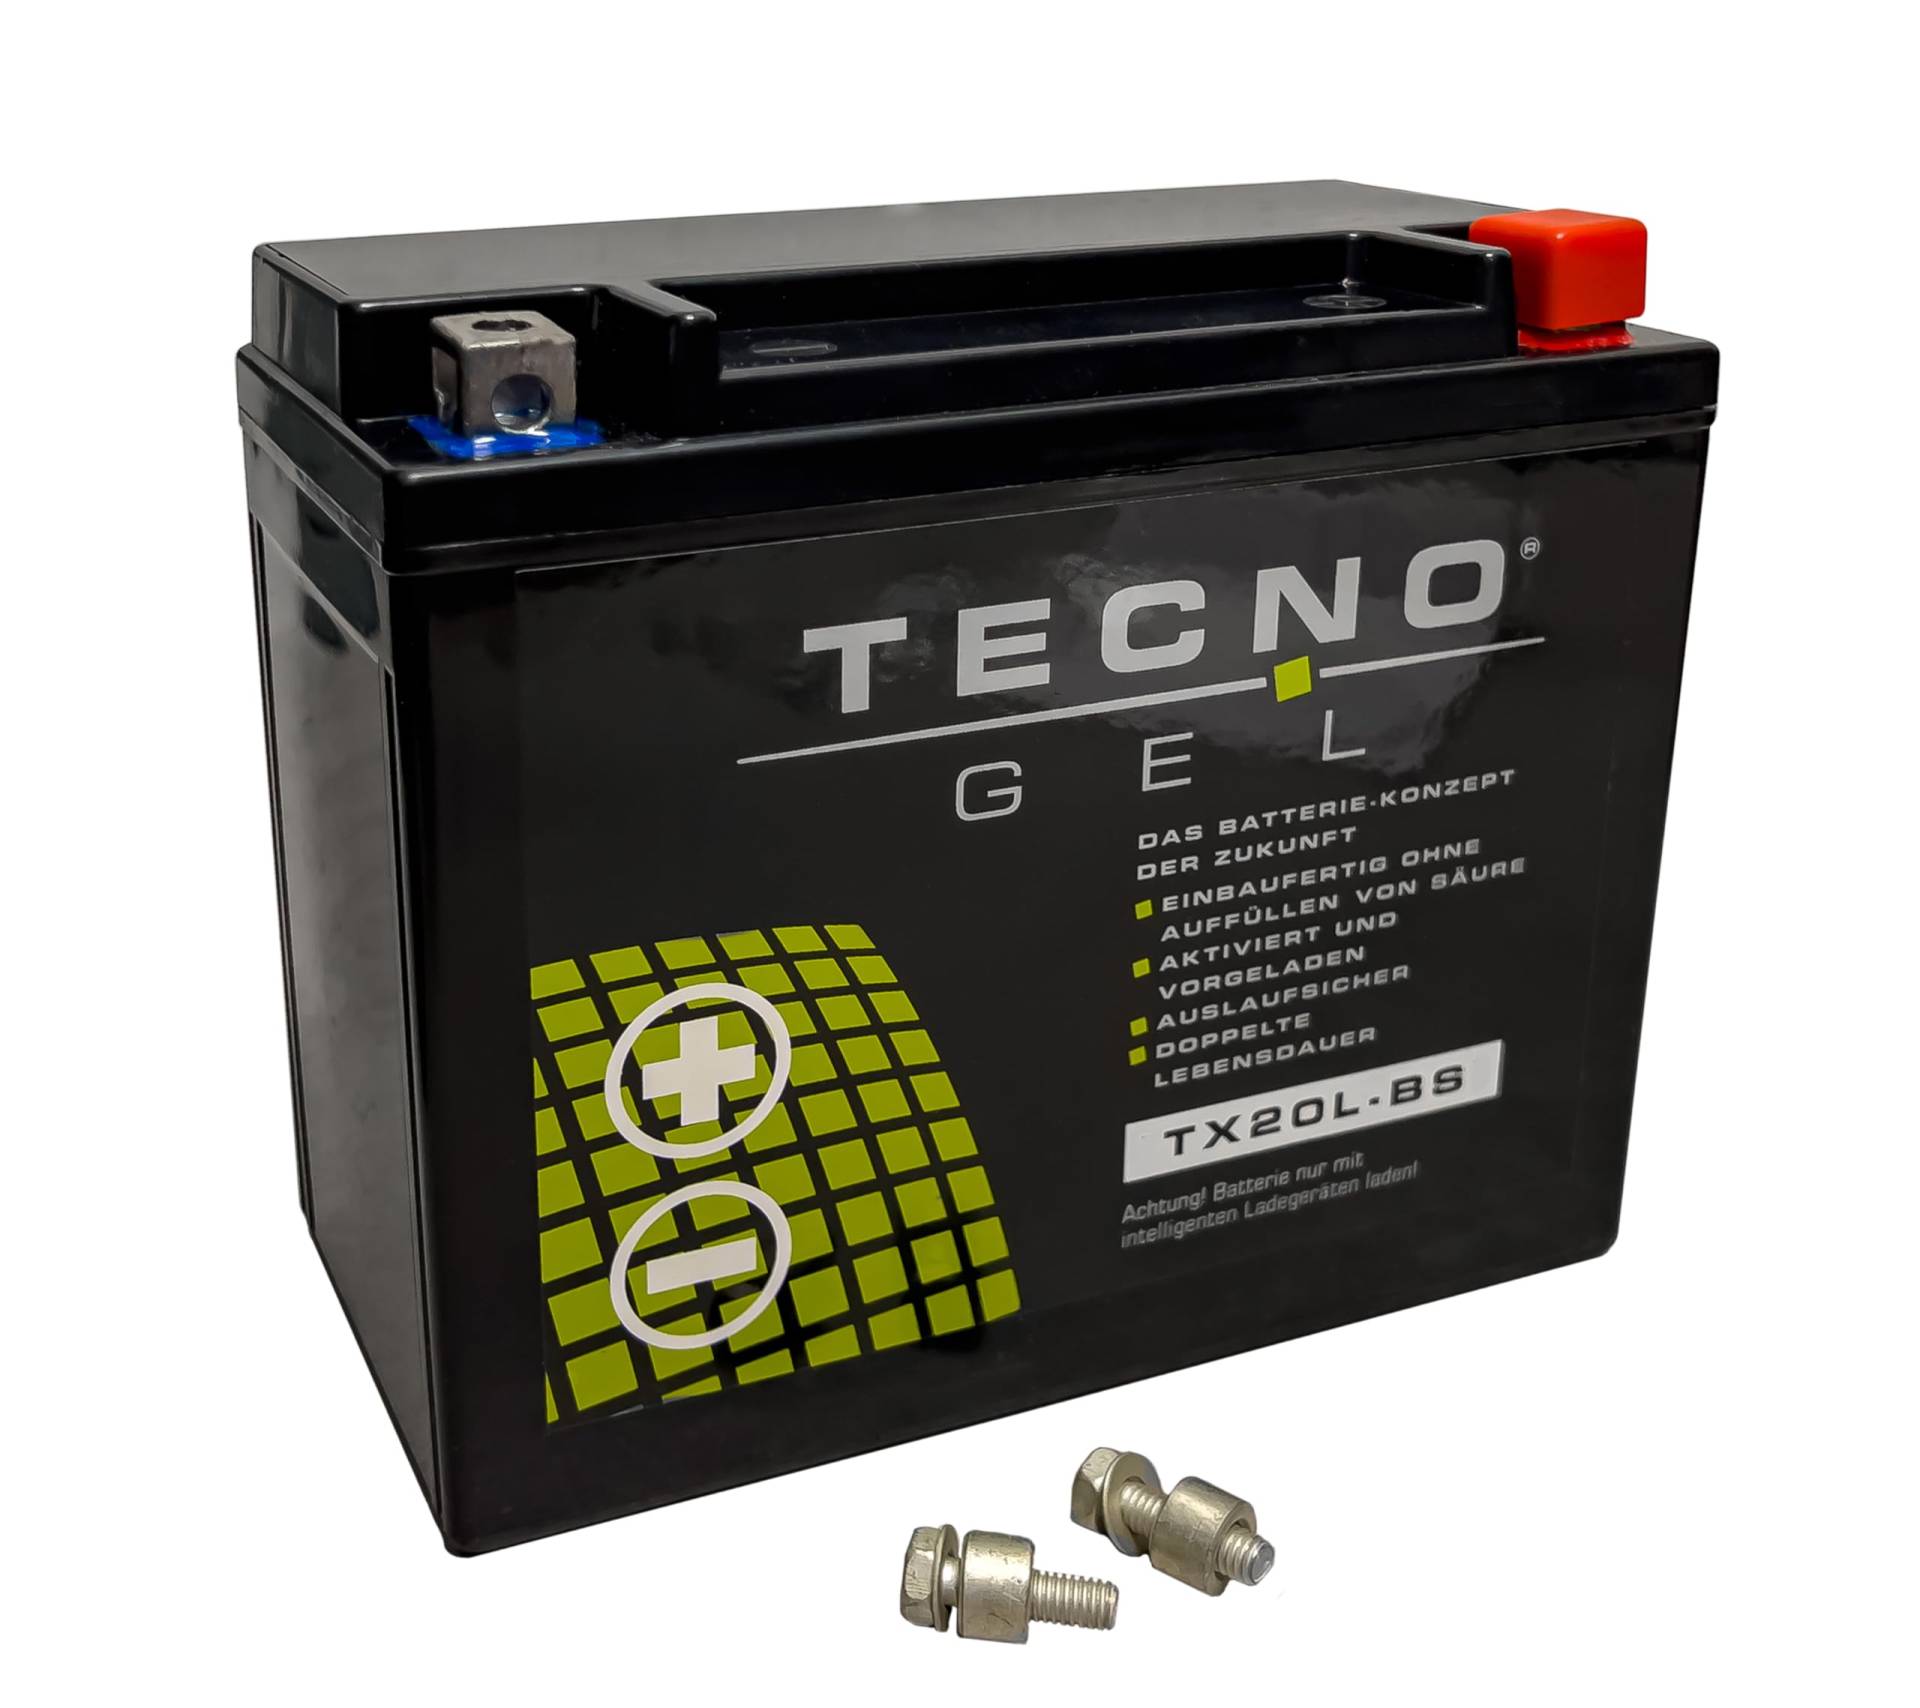 TECNO-GEL Motorrad-Batterie für YTX20L-BS für HARLEY DAVIDSON FLSTN 1340/1450/1584/1690 Heritage, Softail Deluxe 2007-2017, 12V Gel-Batterie 20Ah (DIN 82000), 175x87x155 mm von Wirth-Federn